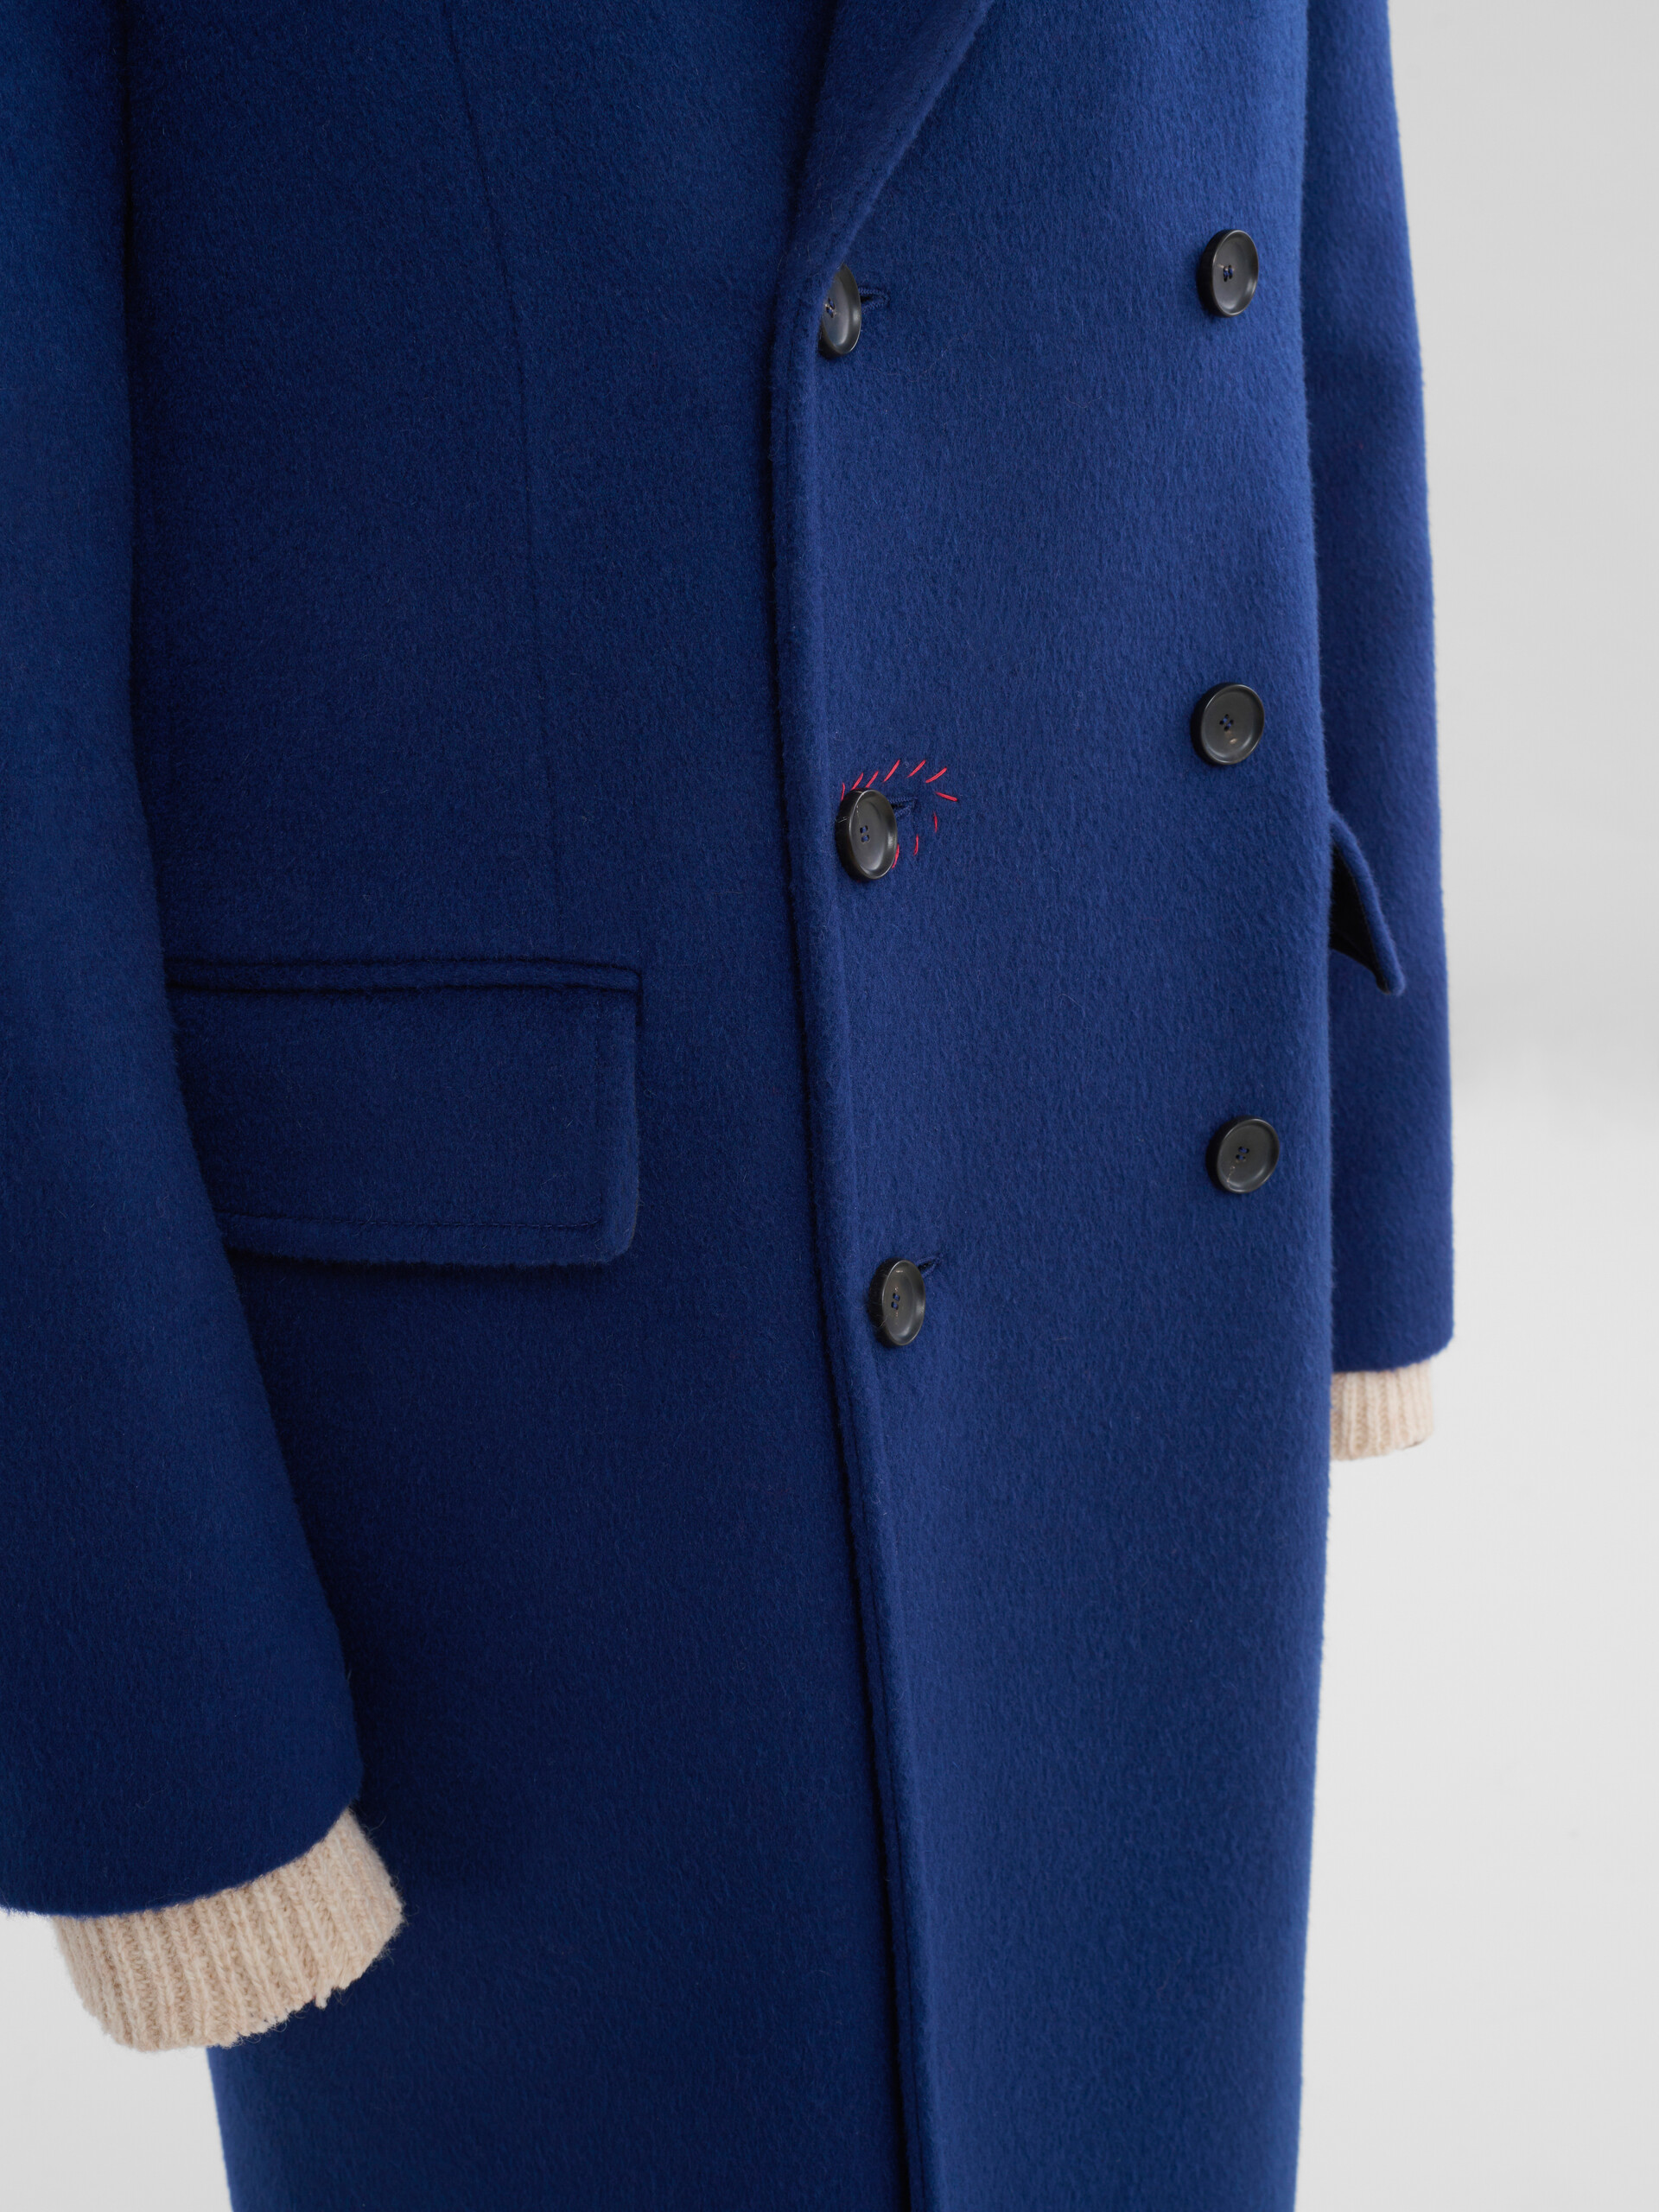 Manteau à double boutonnage en feutre bleu avec effet raccommodé Marni - Vestes - Image 4